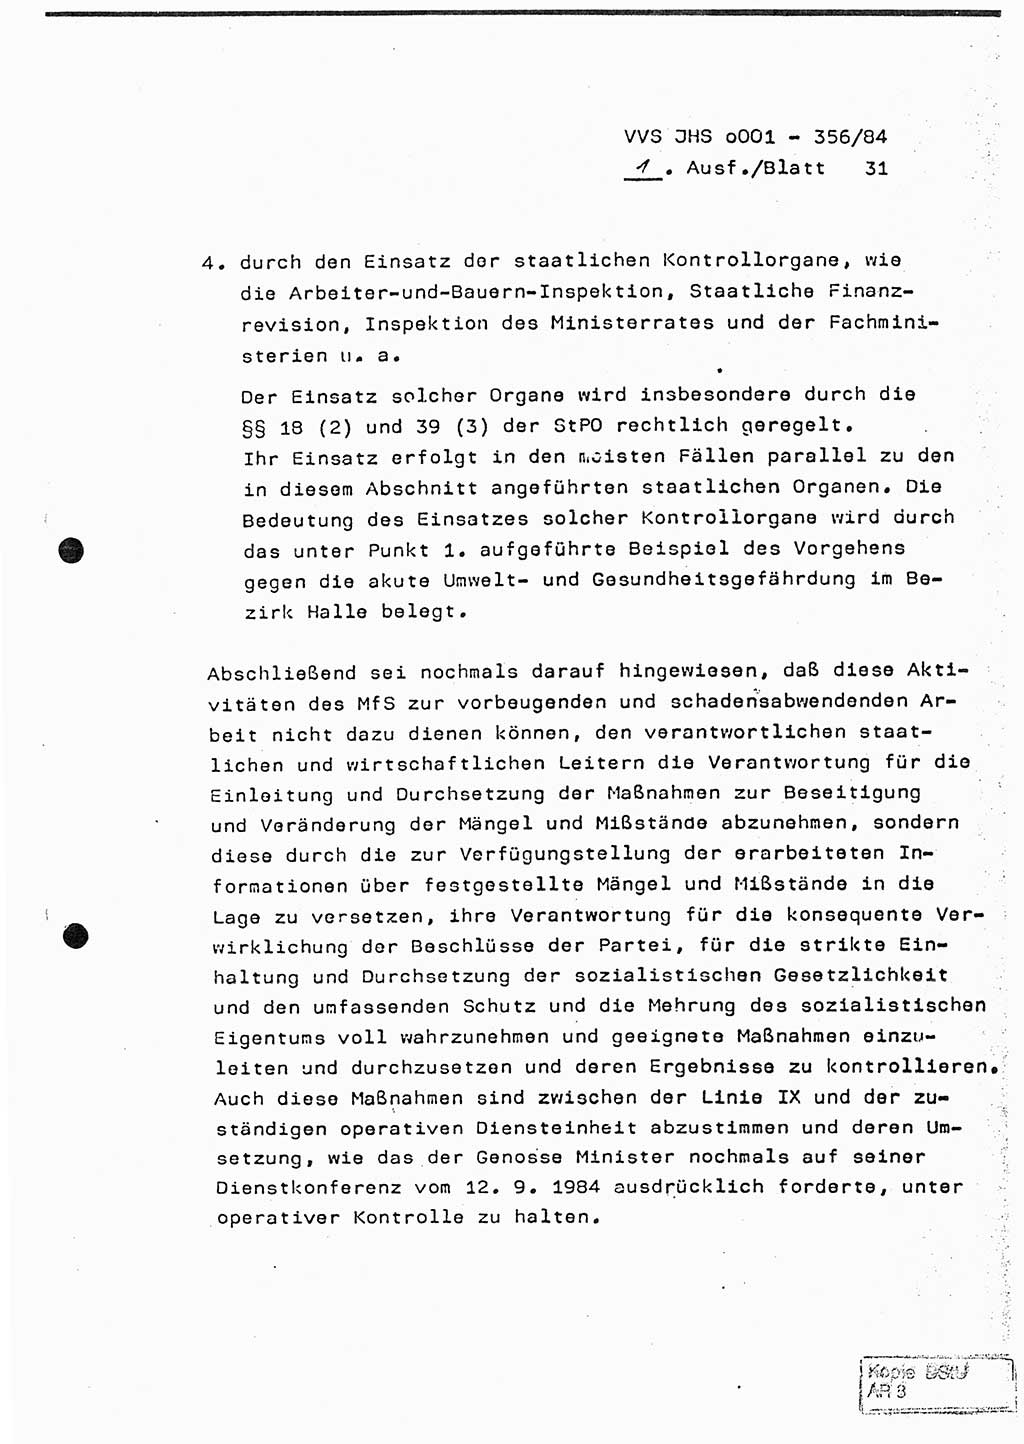 Diplomarbeit, Major Lutz Rahaus (HA Ⅸ/3), Ministerium für Staatssicherheit (MfS) [Deutsche Demokratische Republik (DDR)], Juristische Hochschule (JHS), Vertrauliche Verschlußsache (VVS) o001-356/84, Potsdam 1984, Seite 31 (Dipl.-Arb. MfS DDR JHS VVS o001-356/84 1984, S. 31)